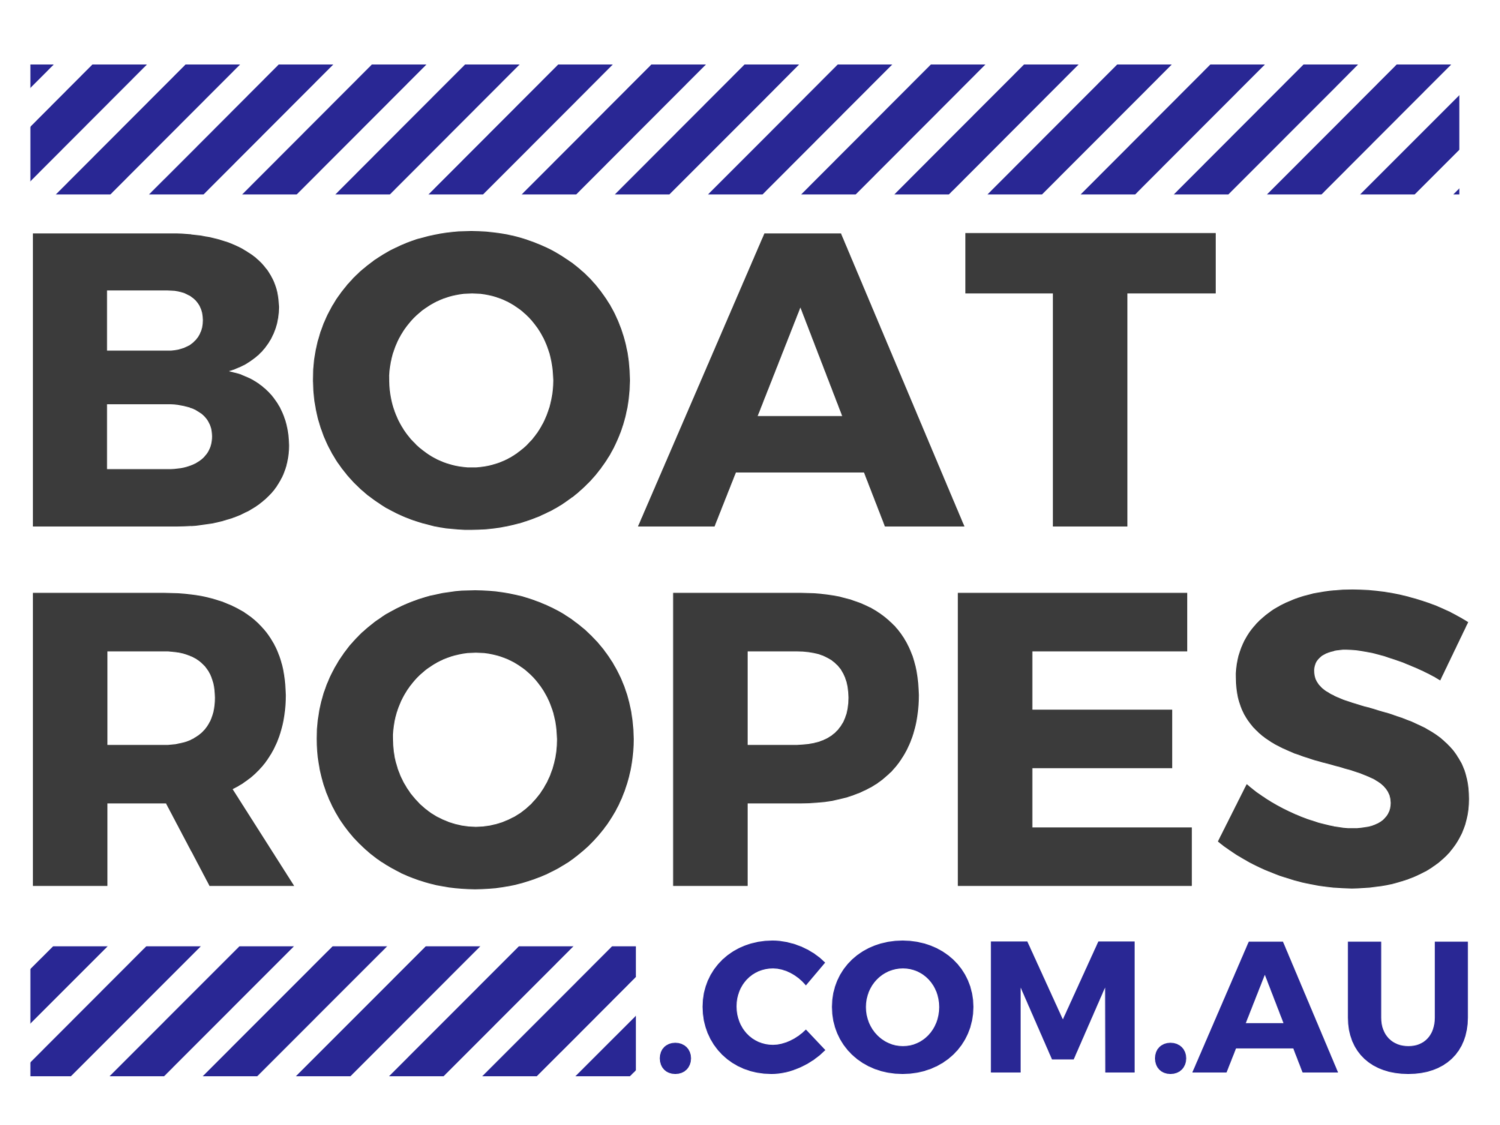 Boatropes.com.au